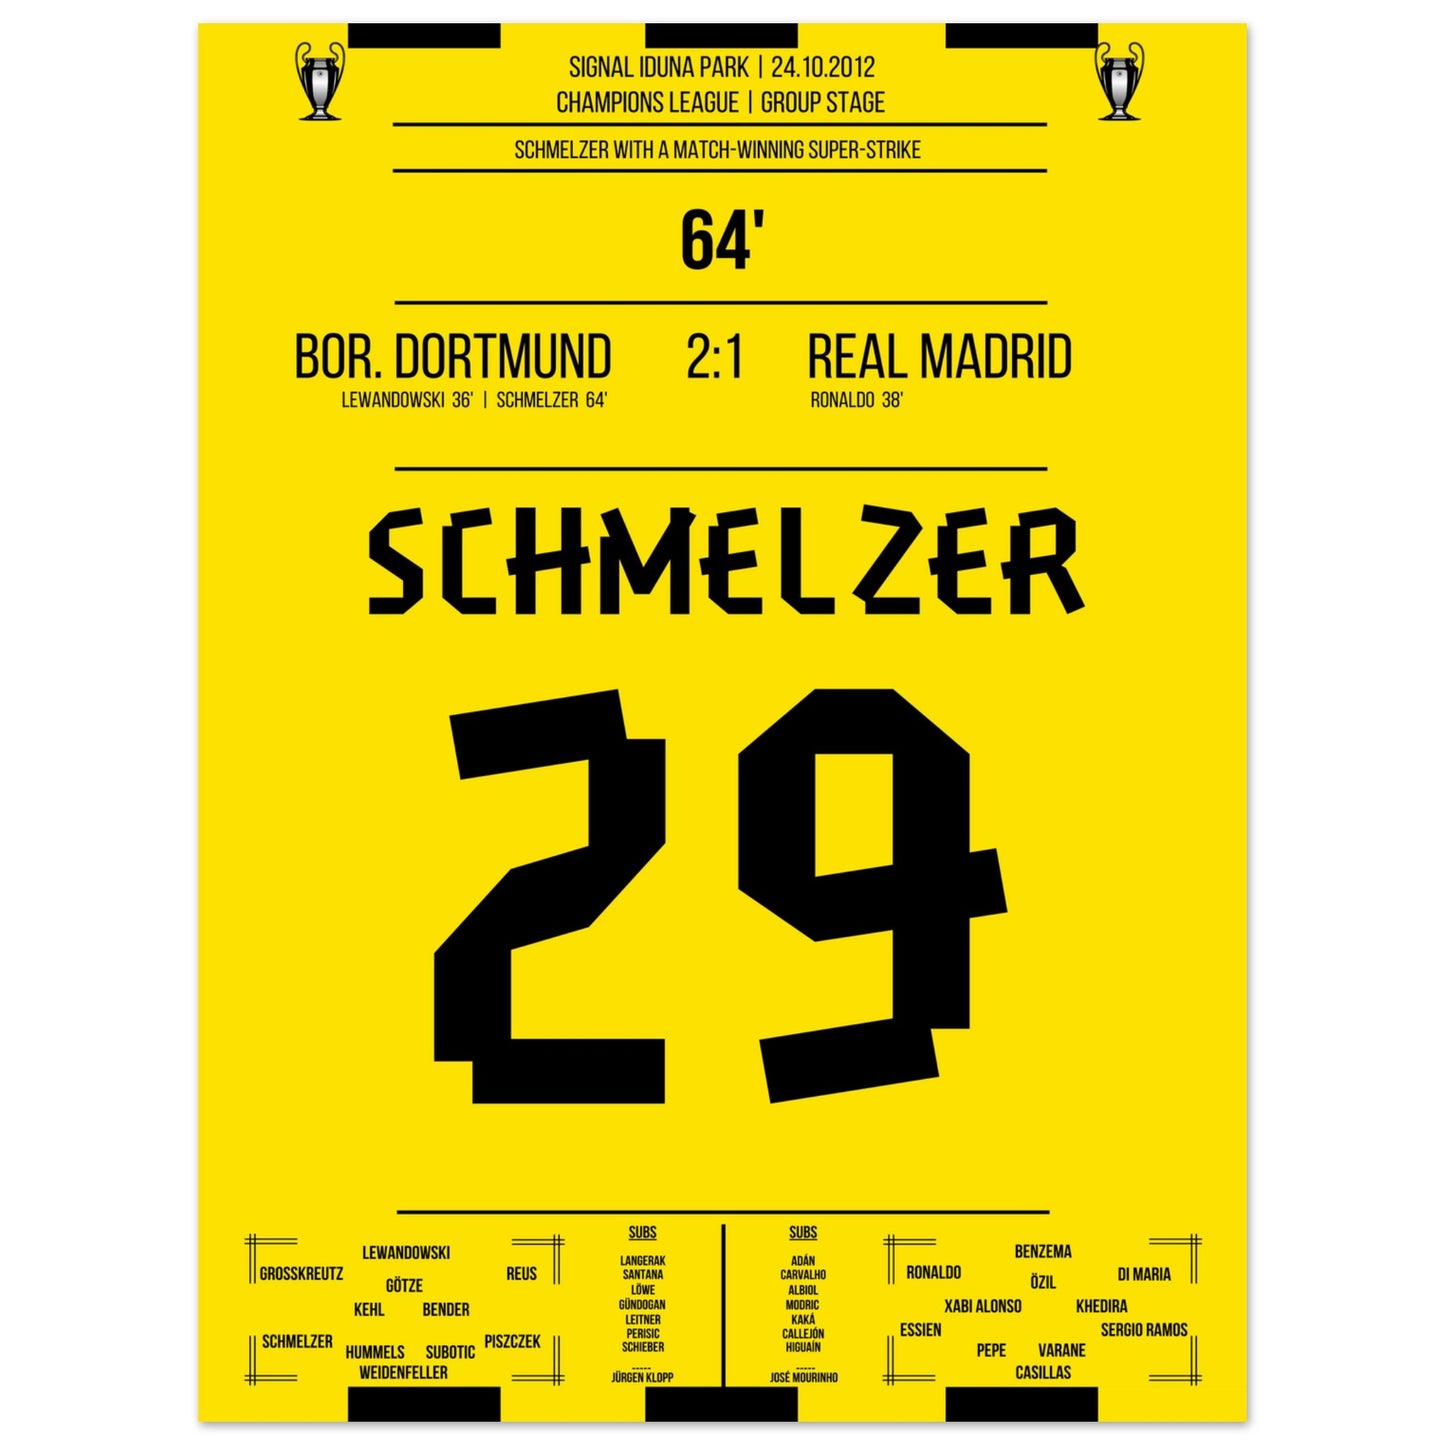 Schmelzer's linke Klebe gegen Real in der Champions League 2012 45x60-cm-18x24-Ohne-Rahmen